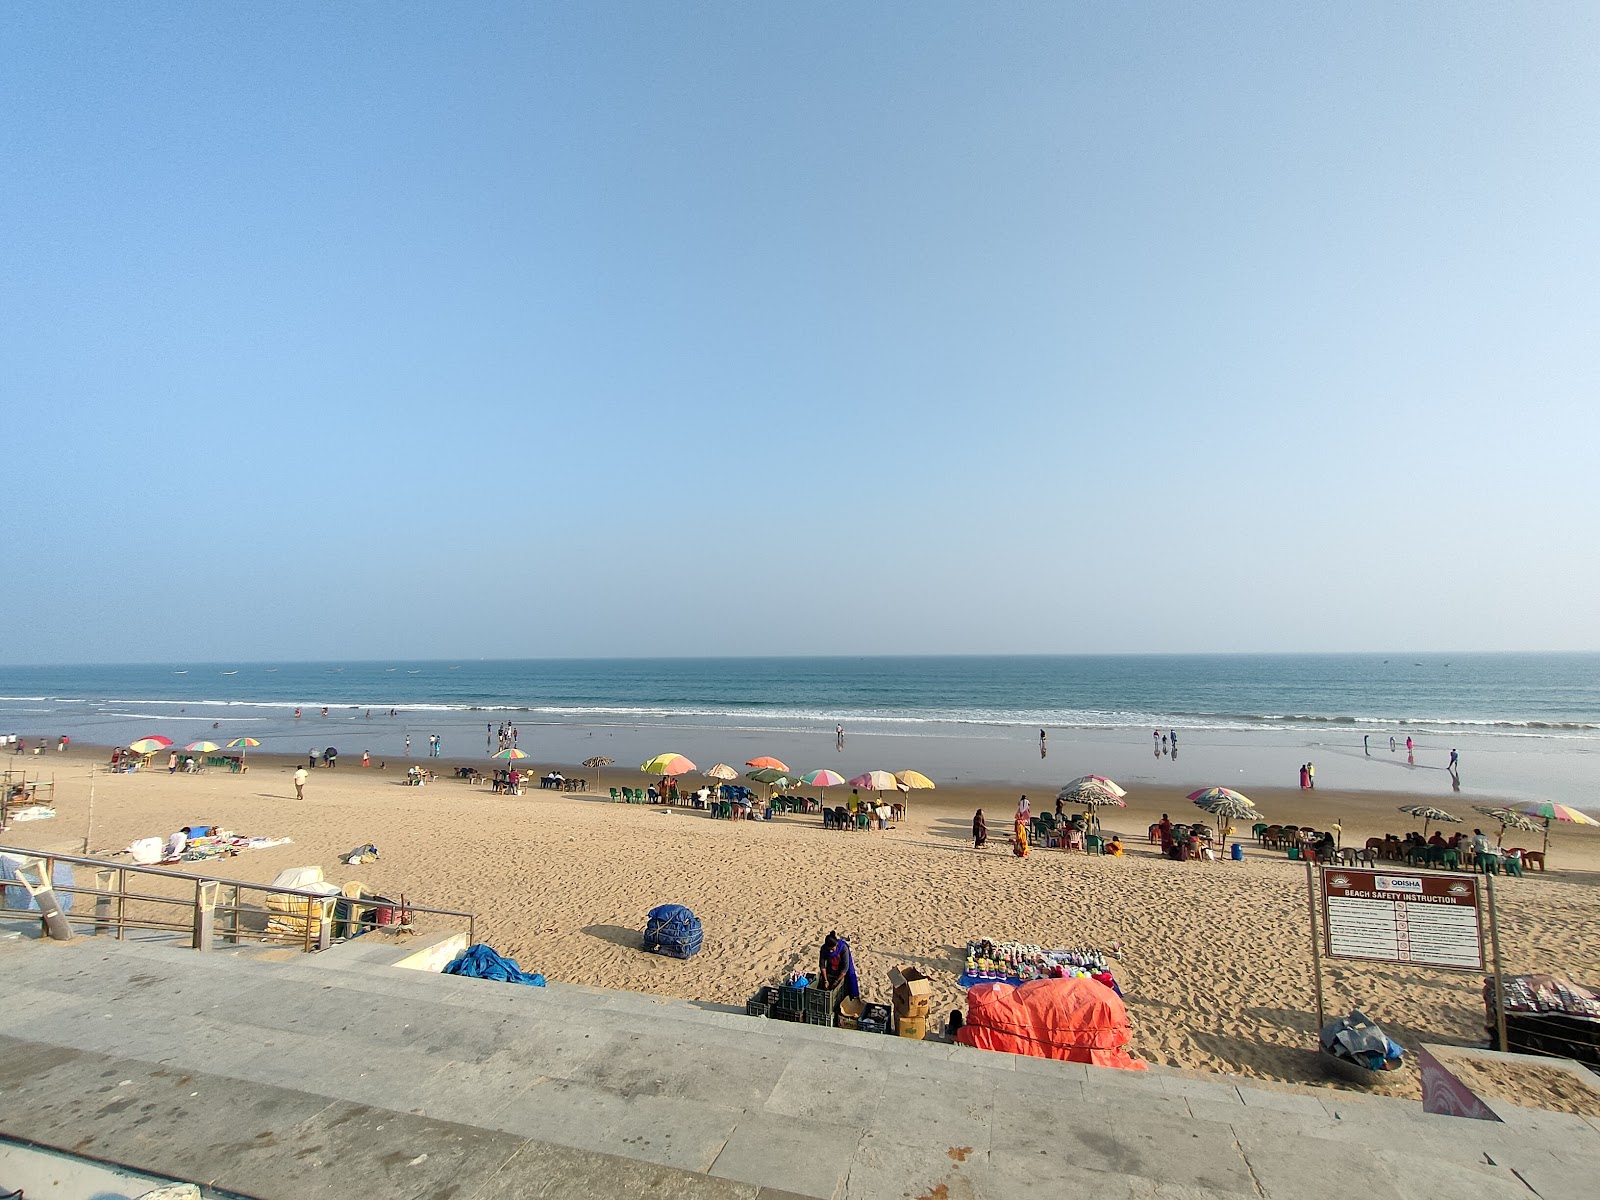 Gopalpur Beach'in fotoğrafı parlak ince kum yüzey ile